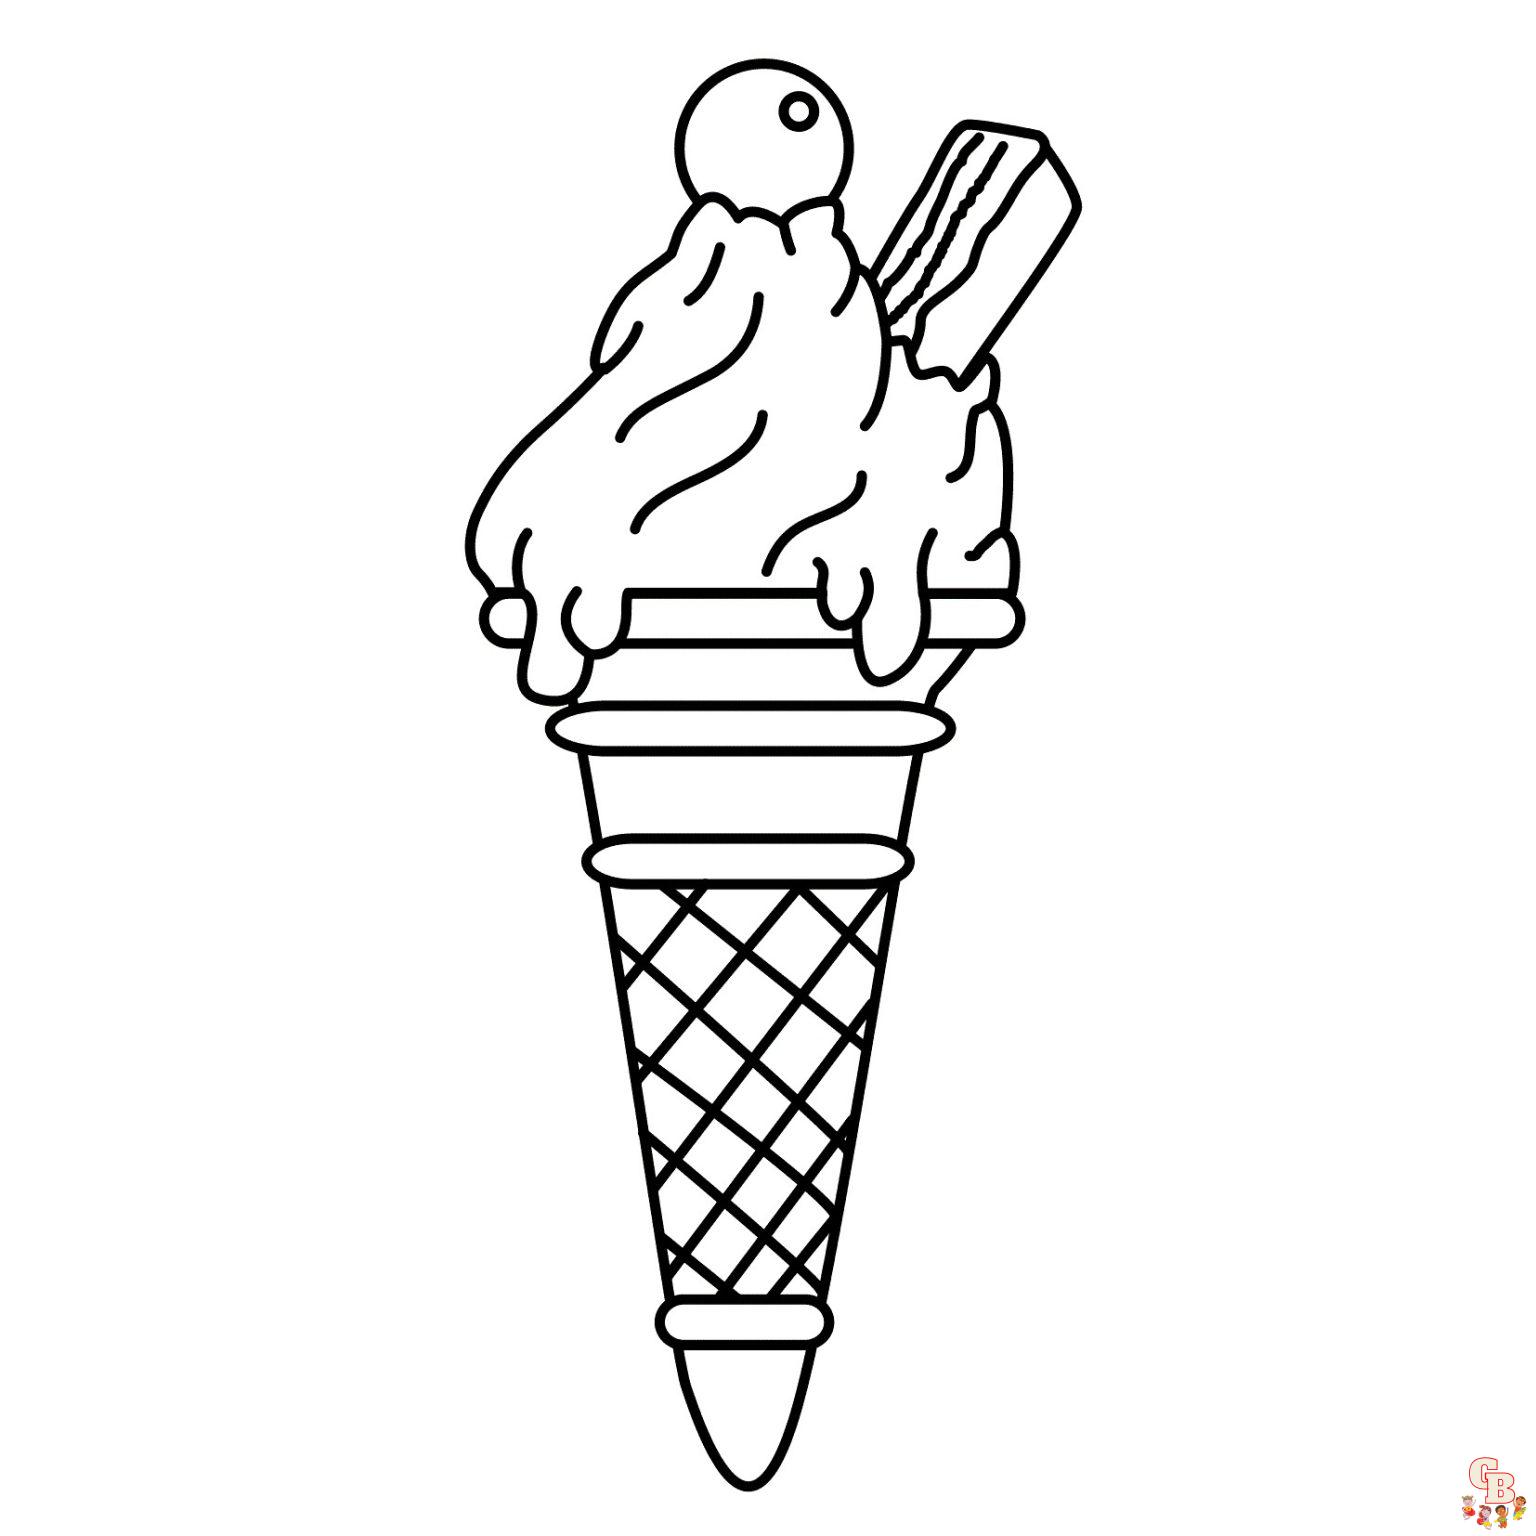 ijsjes 01 1536x1536 1